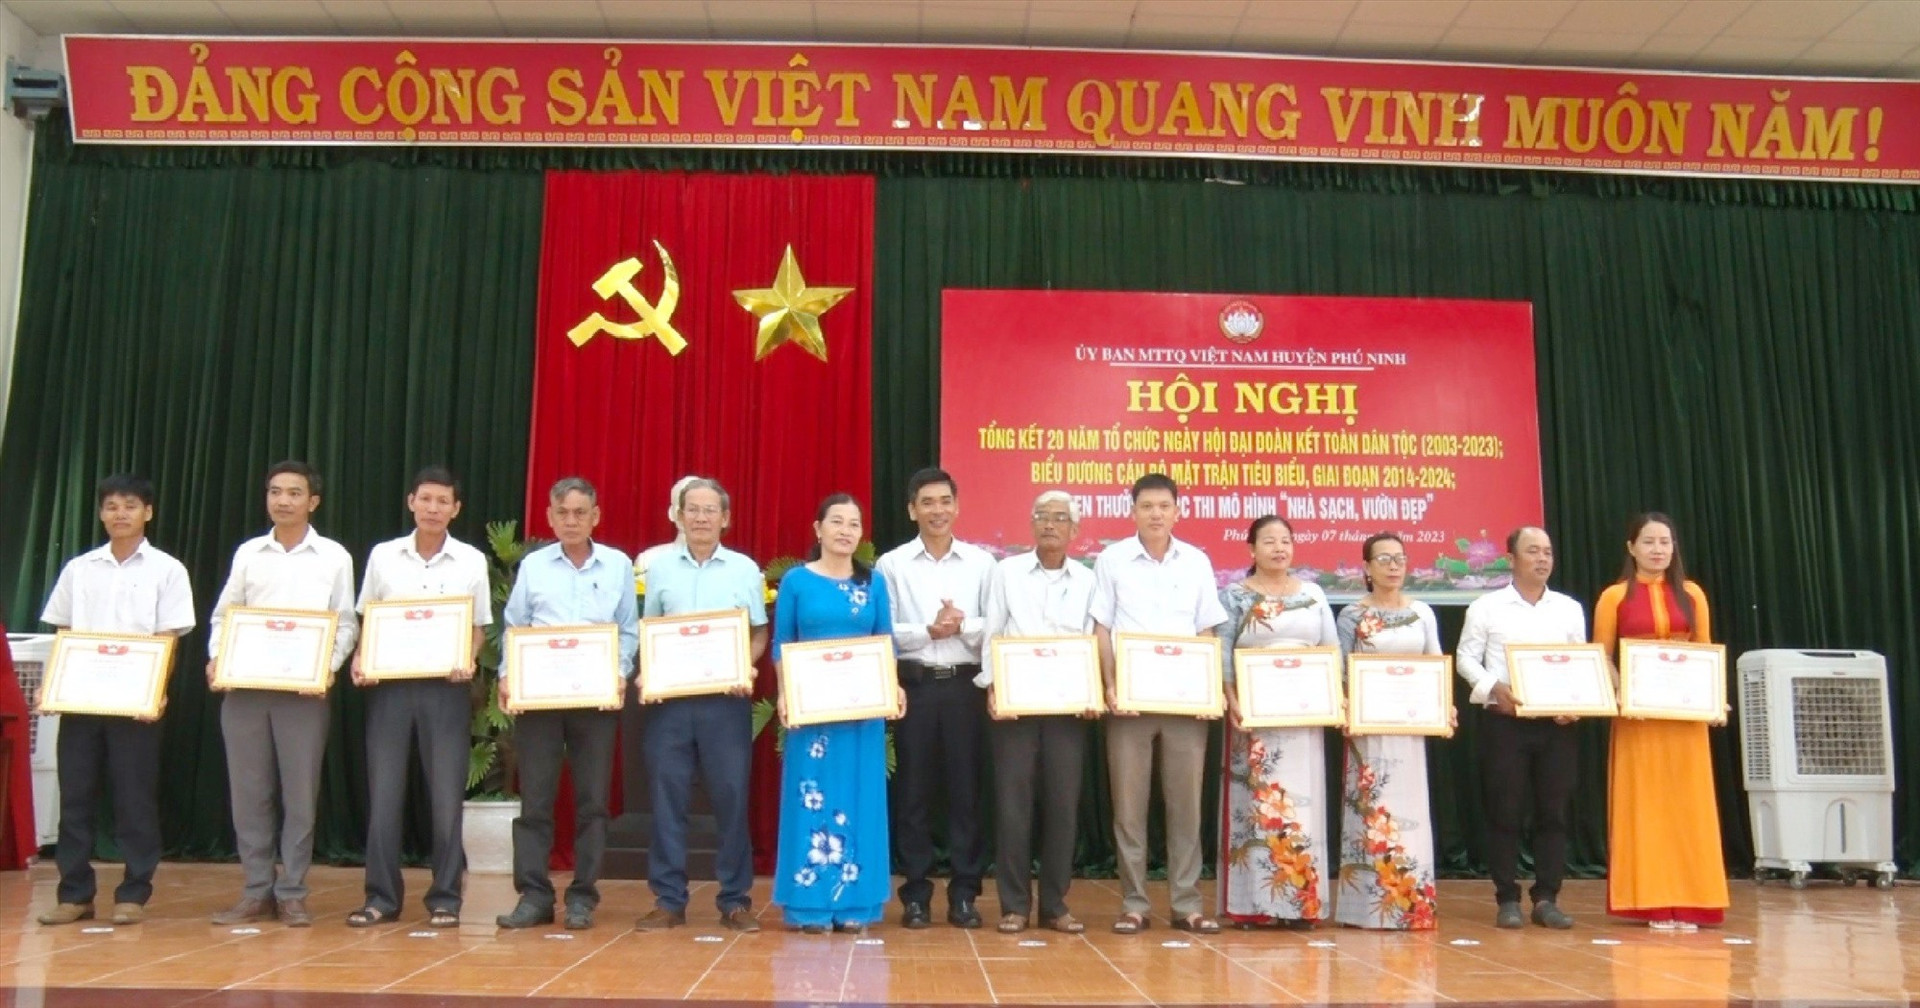 Lãnh đạo huyện Phú Ninh tặng giấy khen cho tập thể có thành tích xuất sắc trong công việc tổ chức Ngày hội “Đoàn kết toàn dân tộc” giai đoạn 2003-2023. Ảnh: P.V